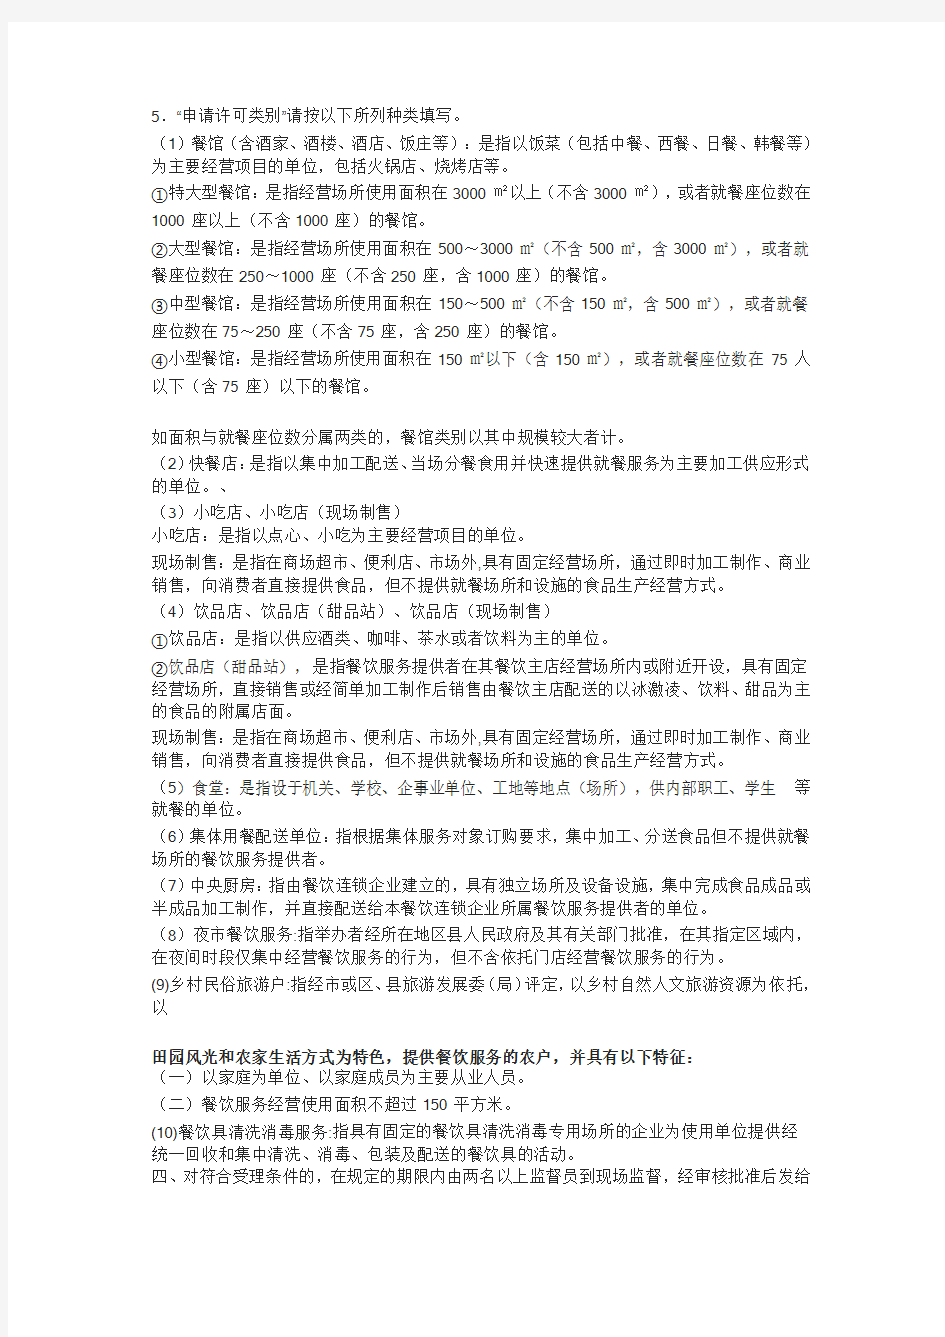 北京餐饮服务许可证审批流程及需要材料